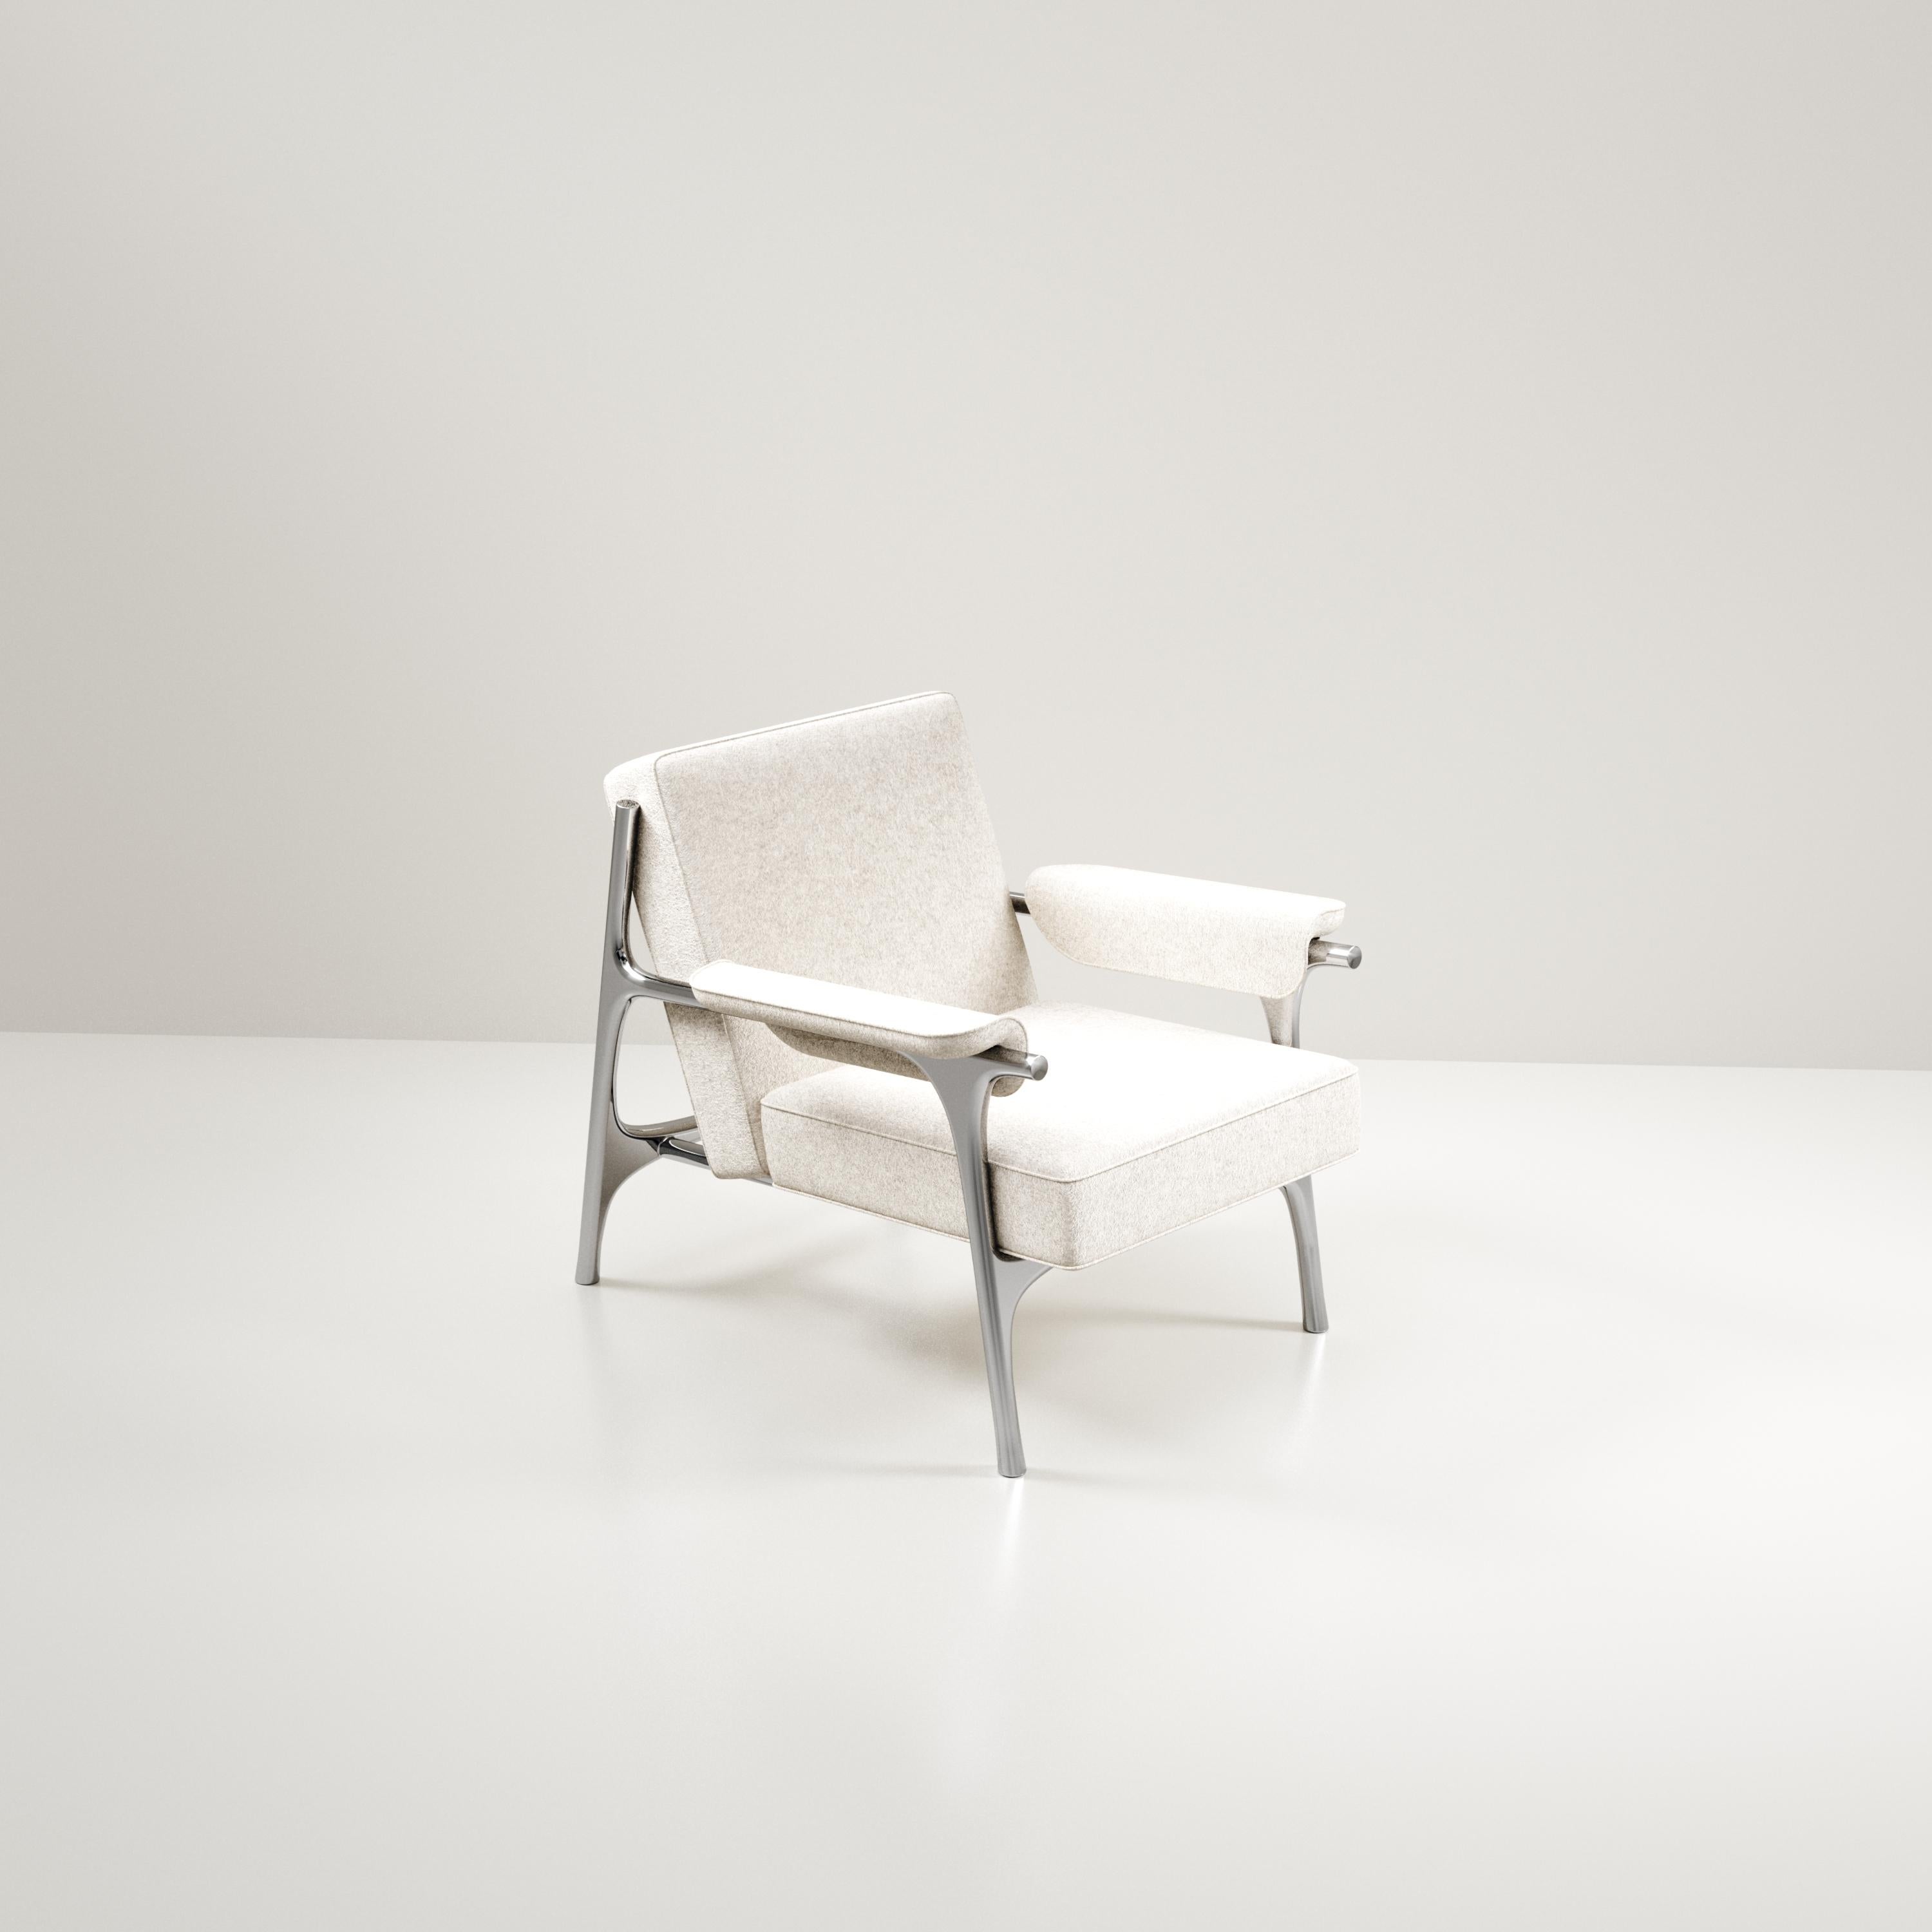 Der Sessel Ramo von R & Y Augousti ist ein elegantes und vielseitiges Möbelstück. Das gepolsterte Stück bietet Komfort, während es mit dem verchromten Gestell und den Details aus poliertem Edelstahl eine einzigartige Ästhetik beibehält. Diese